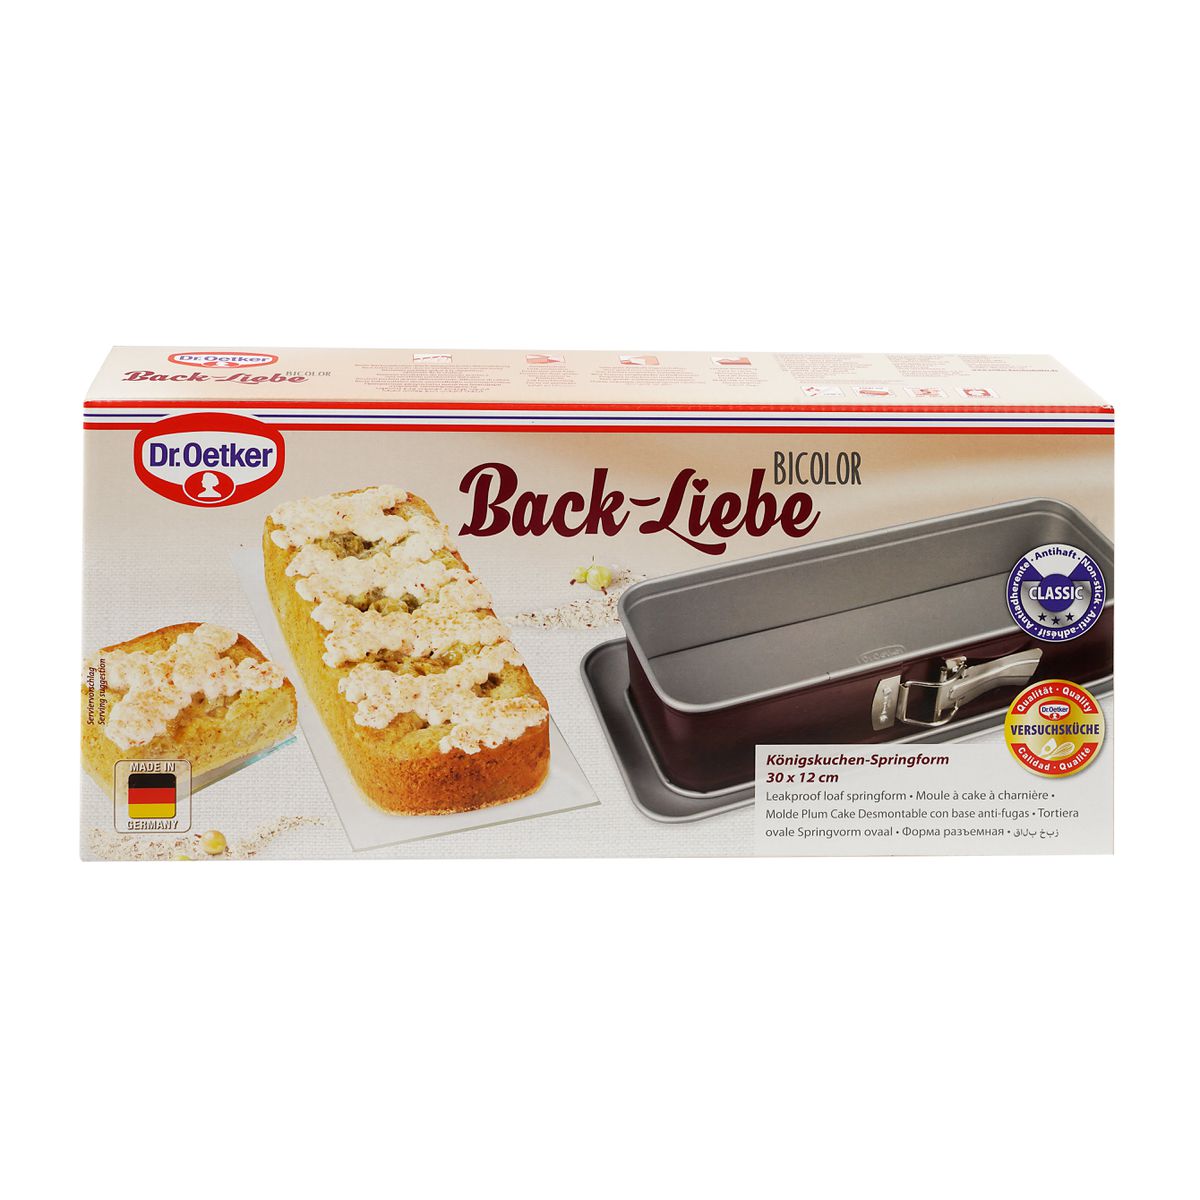 Moule à cake à charnière 30 cm Dr Oetker Back-Liebe Bicolor